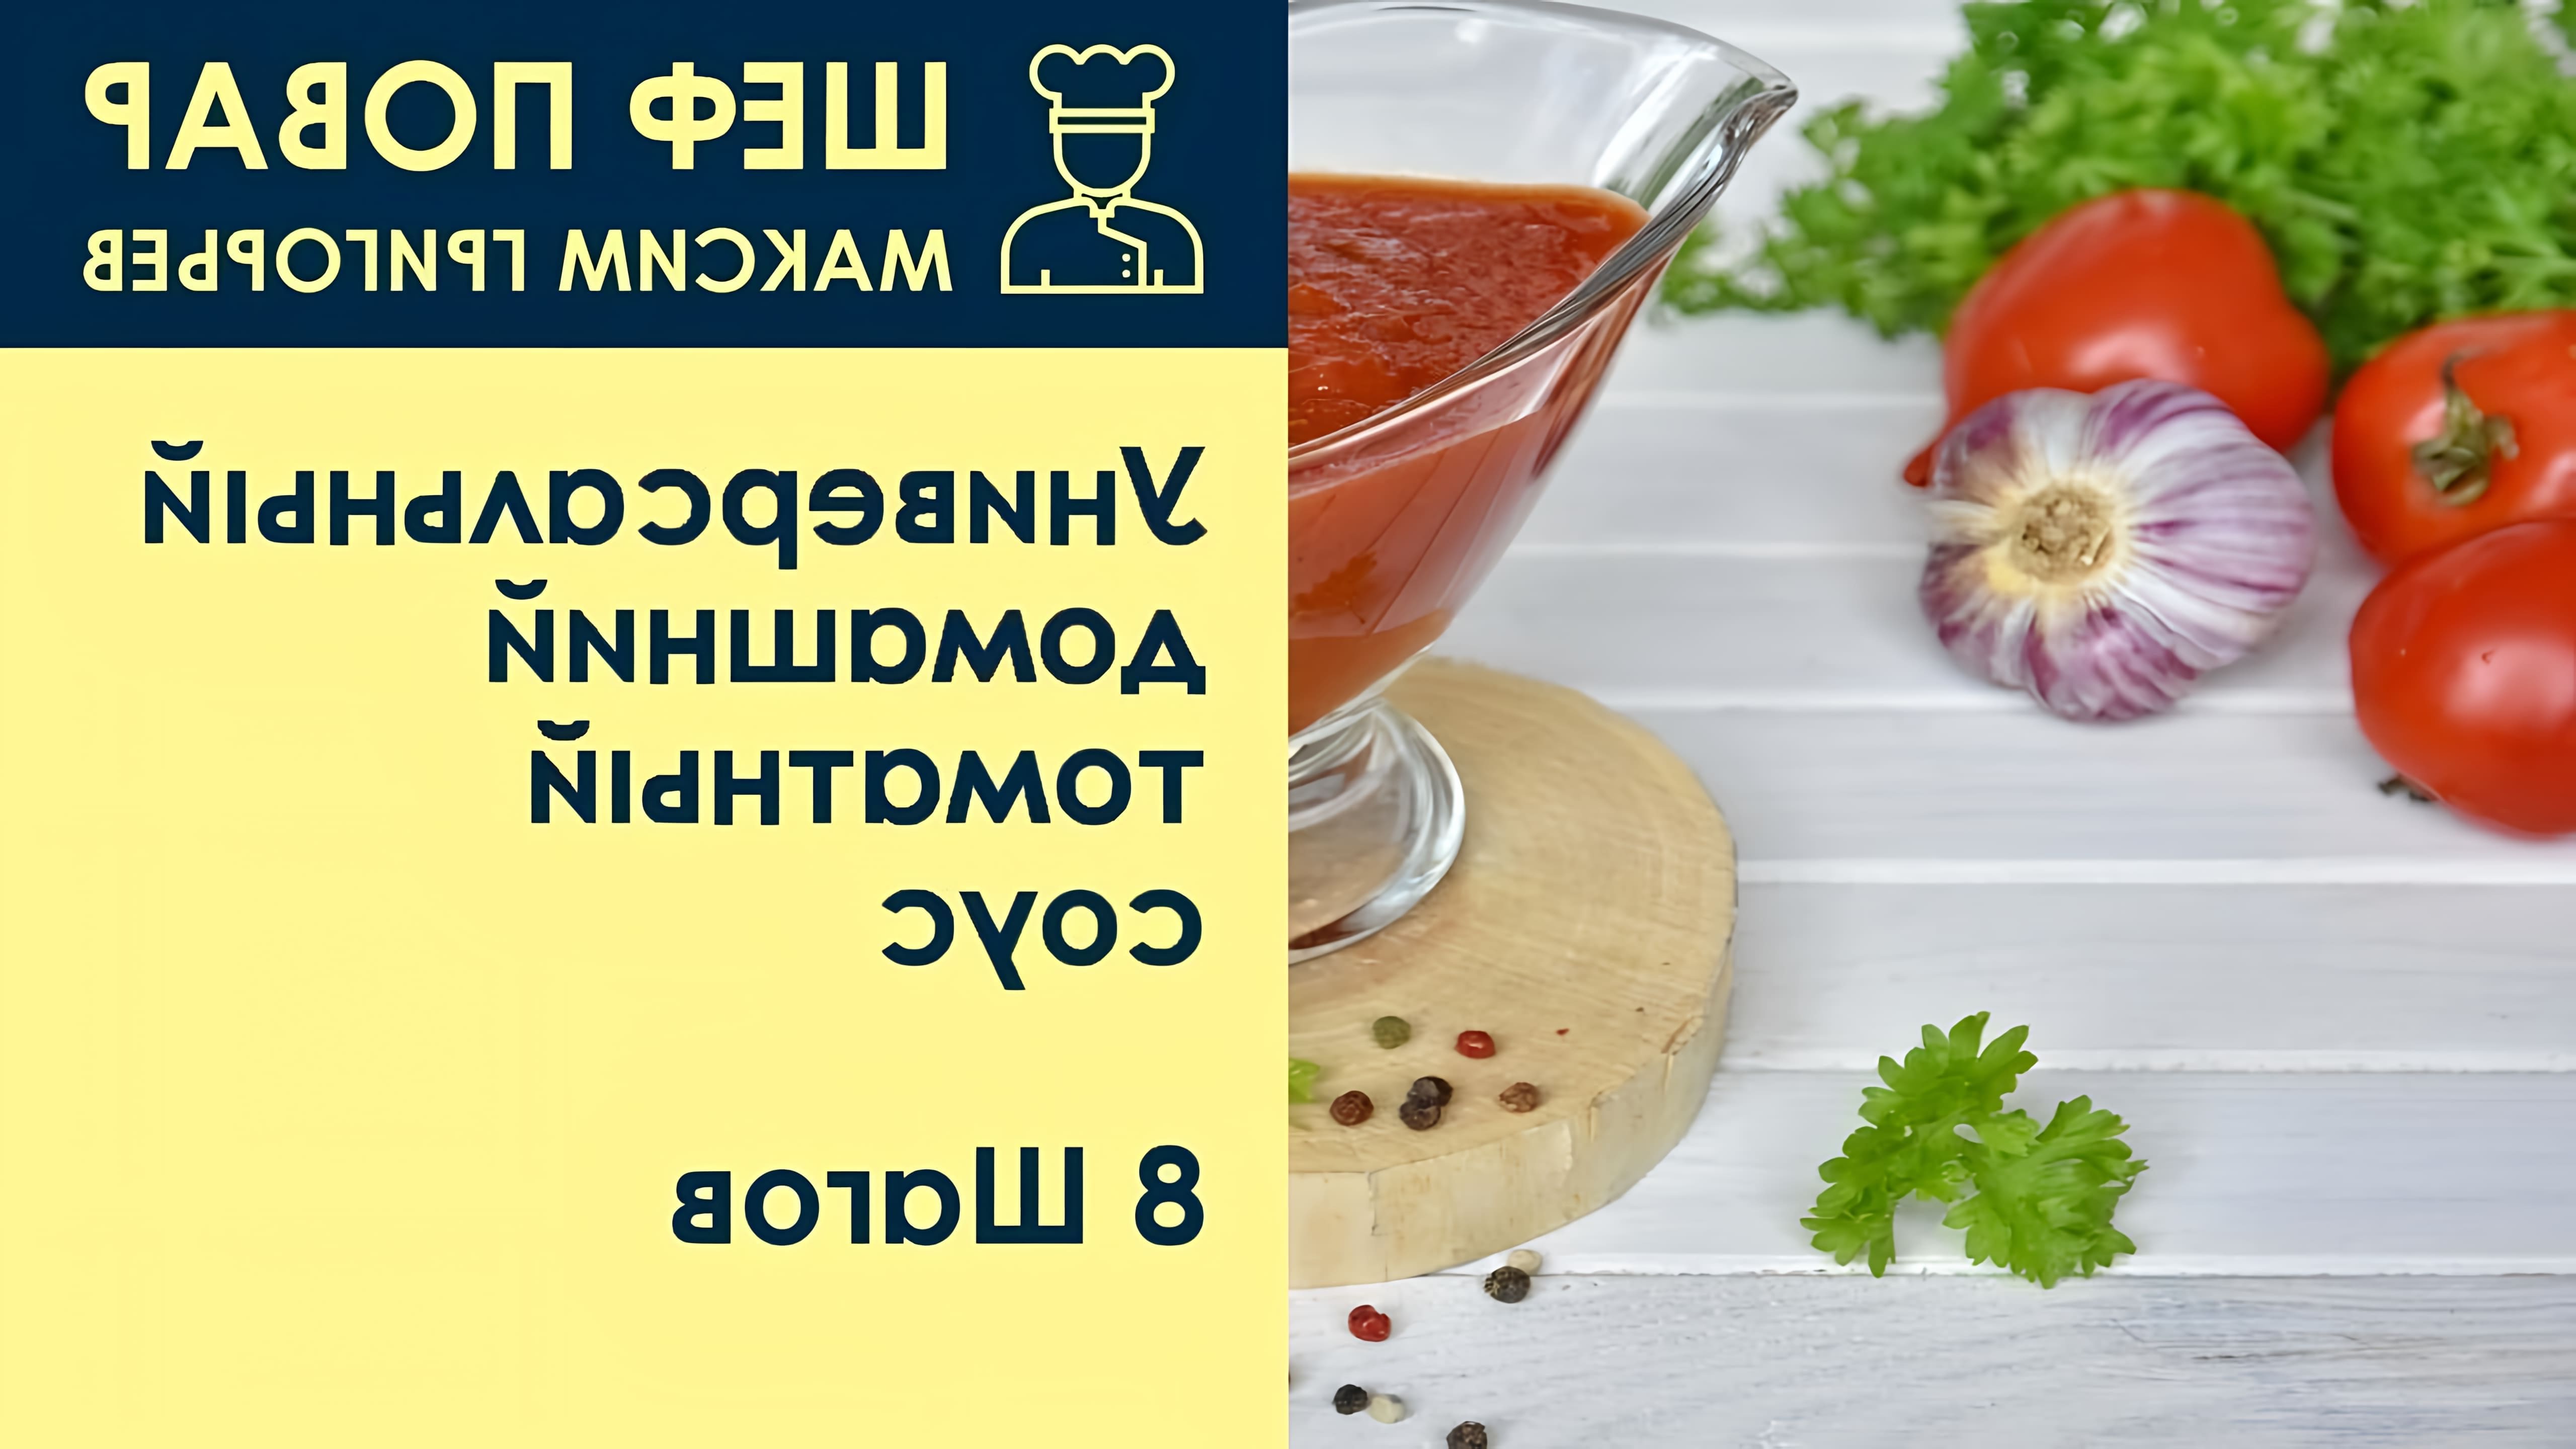 В этом видео шеф-повар Максим Григорьев показывает, как приготовить универсальный домашний томатный соус